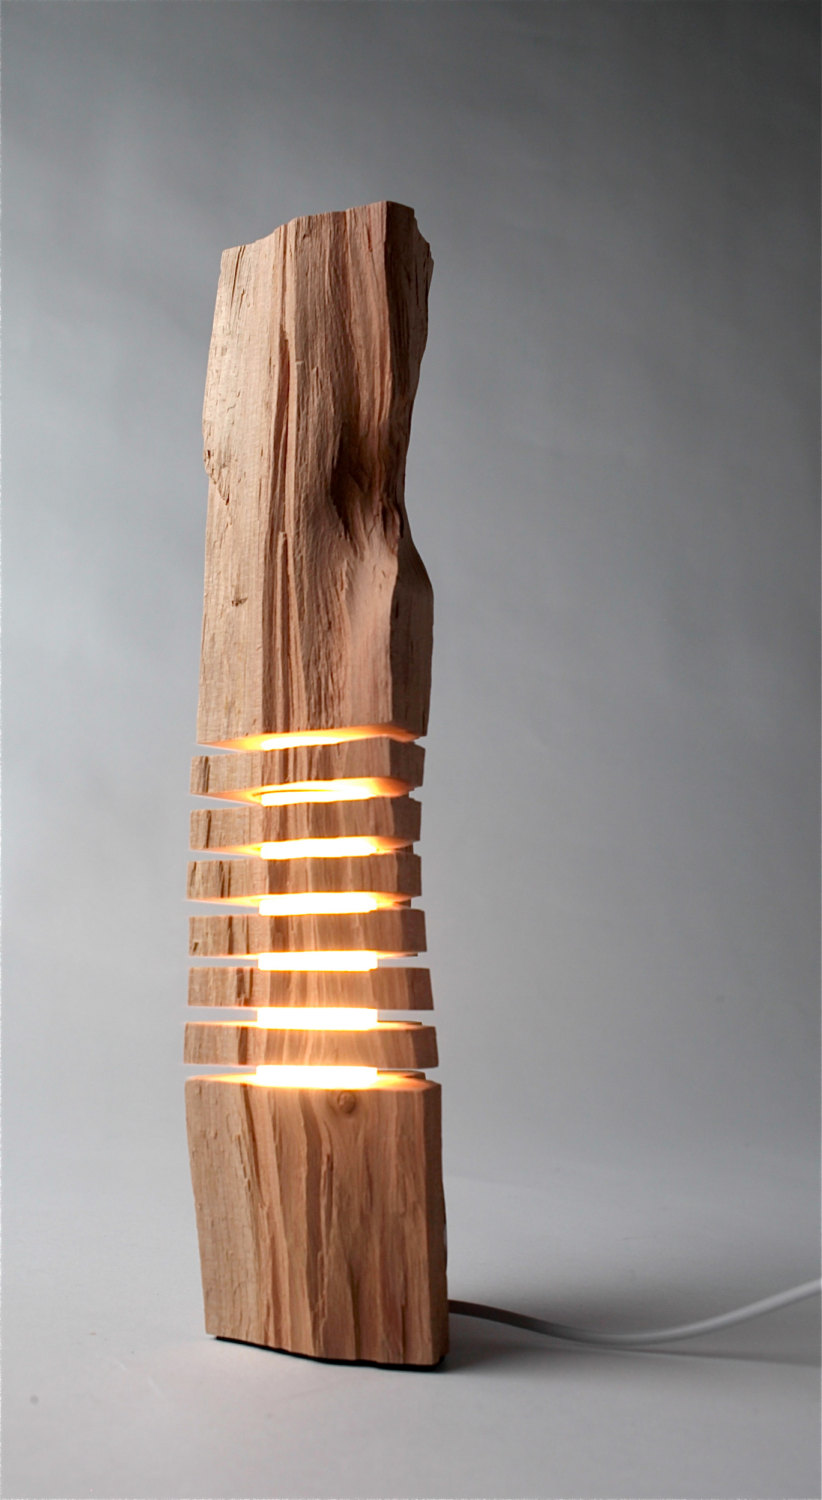 Светильники из дерева «Split Wood Lights» от художника Paul Foeckler